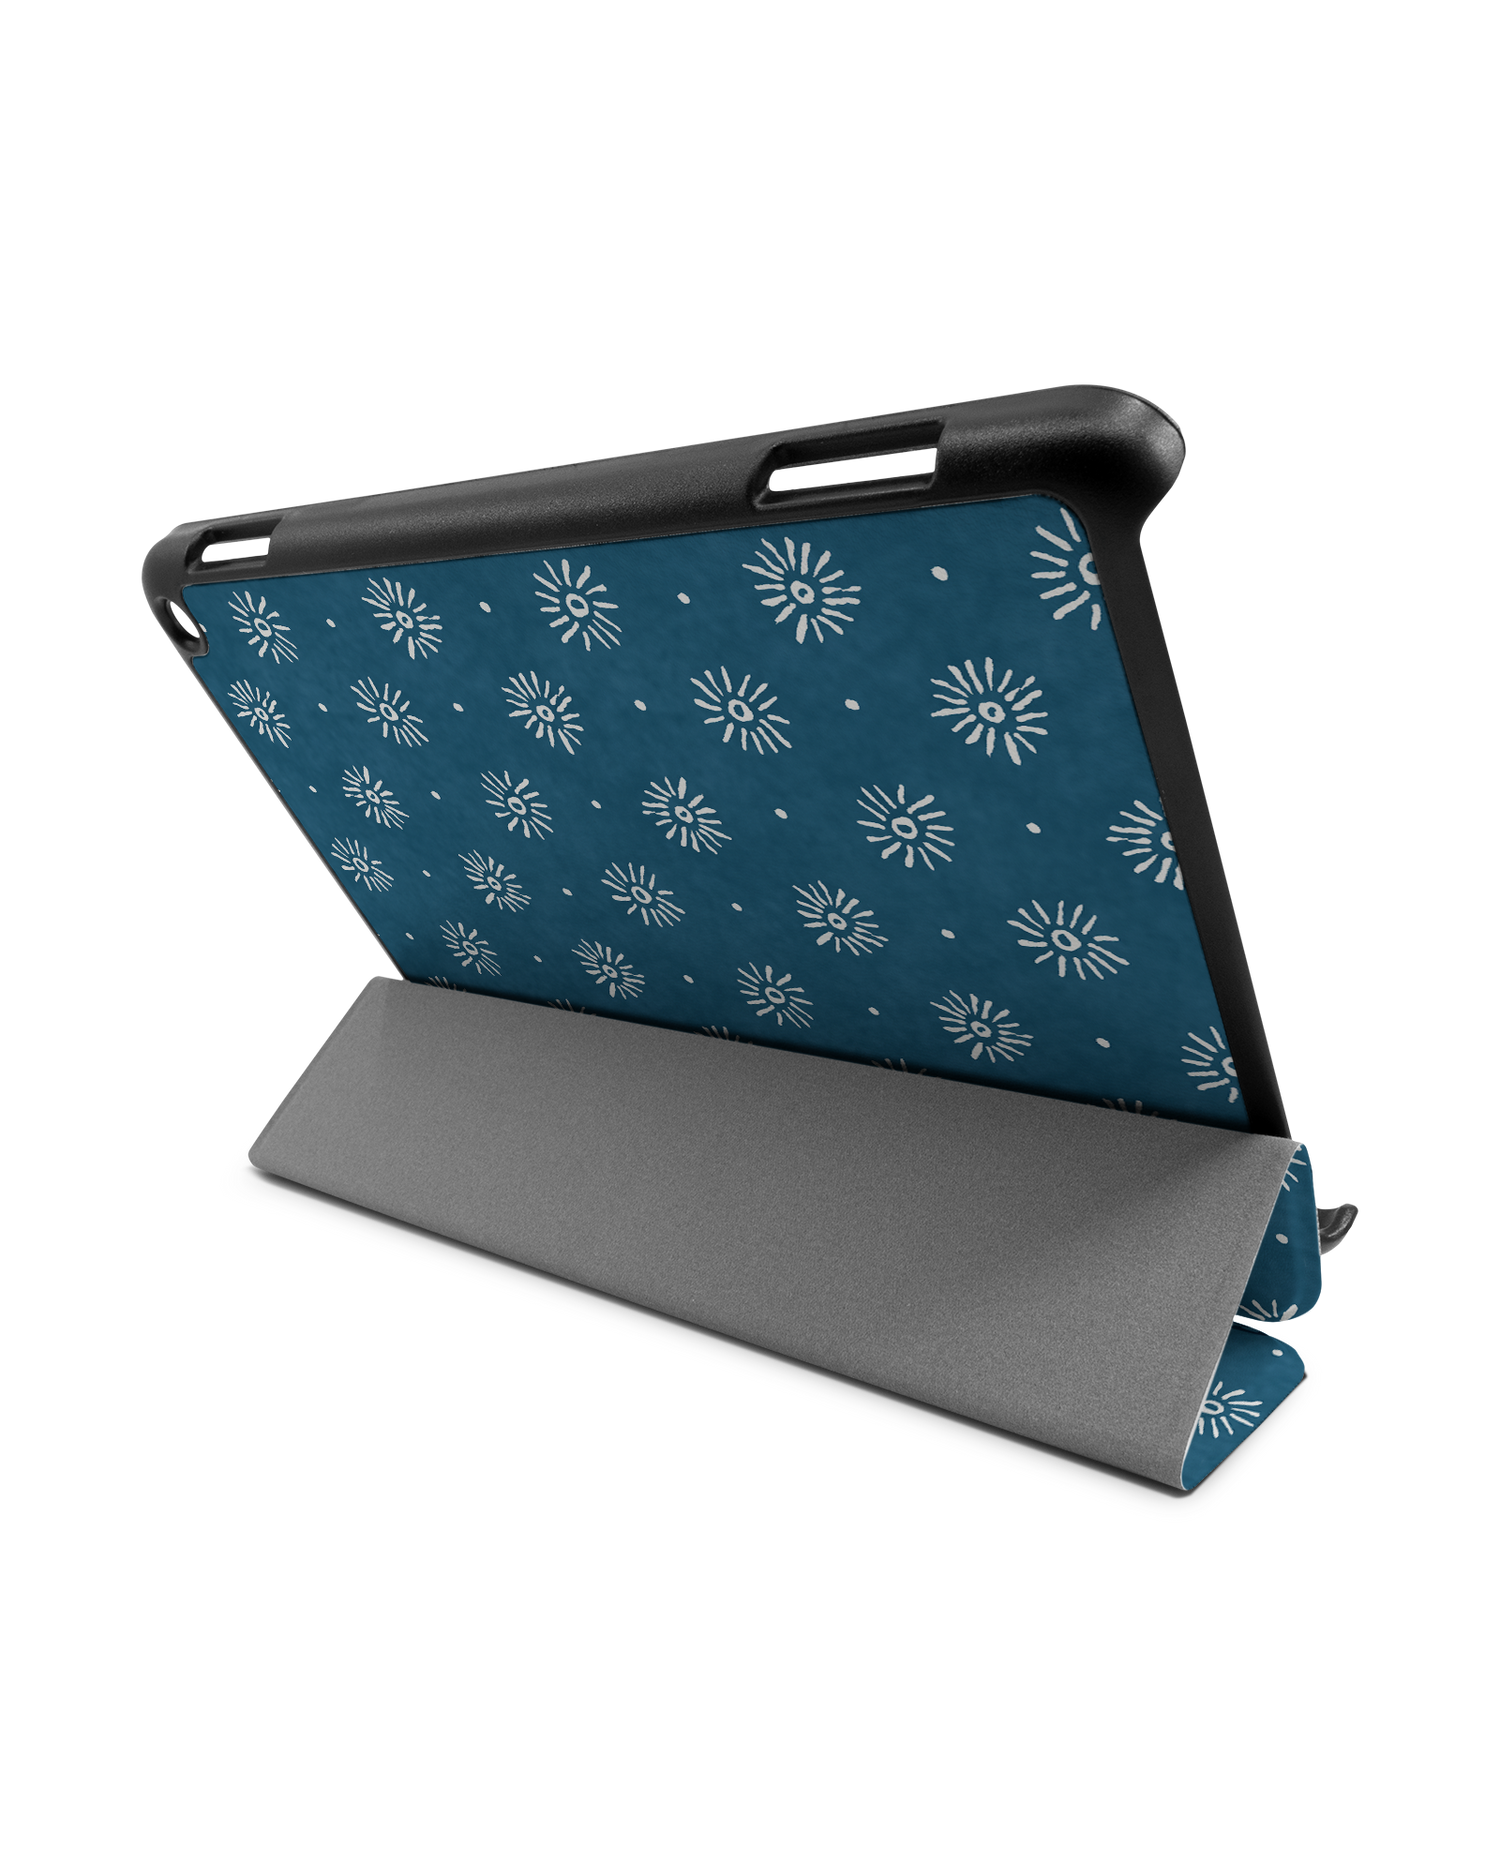 Indigo Sun Pattern Tablet Smart Case für Amazon Fire HD 8 (2022), Amazon Fire HD 8 Plus (2022), Amazon Fire HD 8 (2020), Amazon Fire HD 8 Plus (2020): Aufgestellt im Querformat